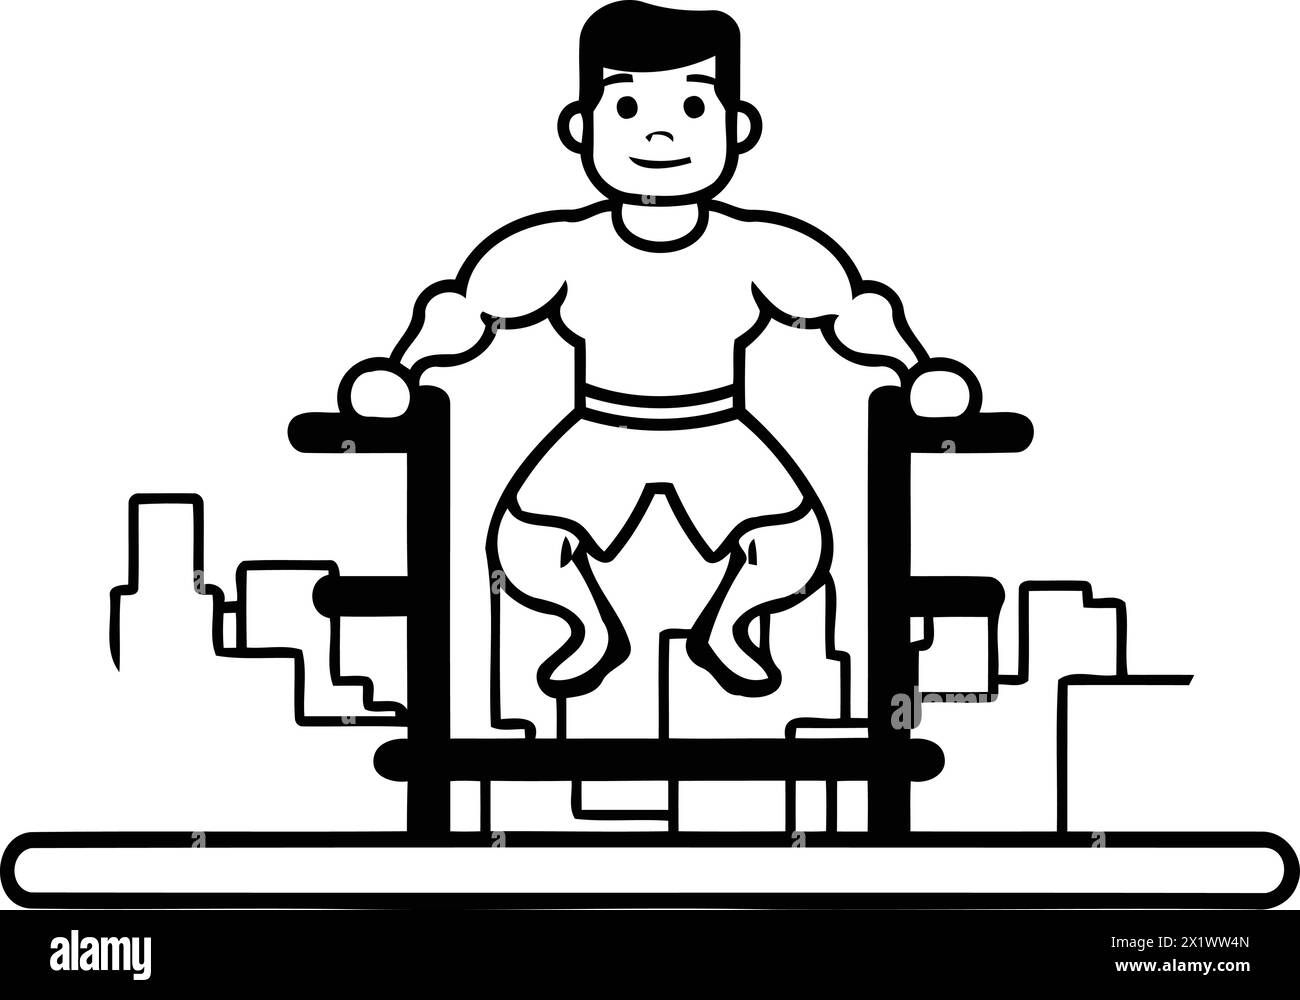 Fitness-Mann macht Übungen auf Crossfit-Maschine. Illustration des flachen Vektors. Stock Vektor